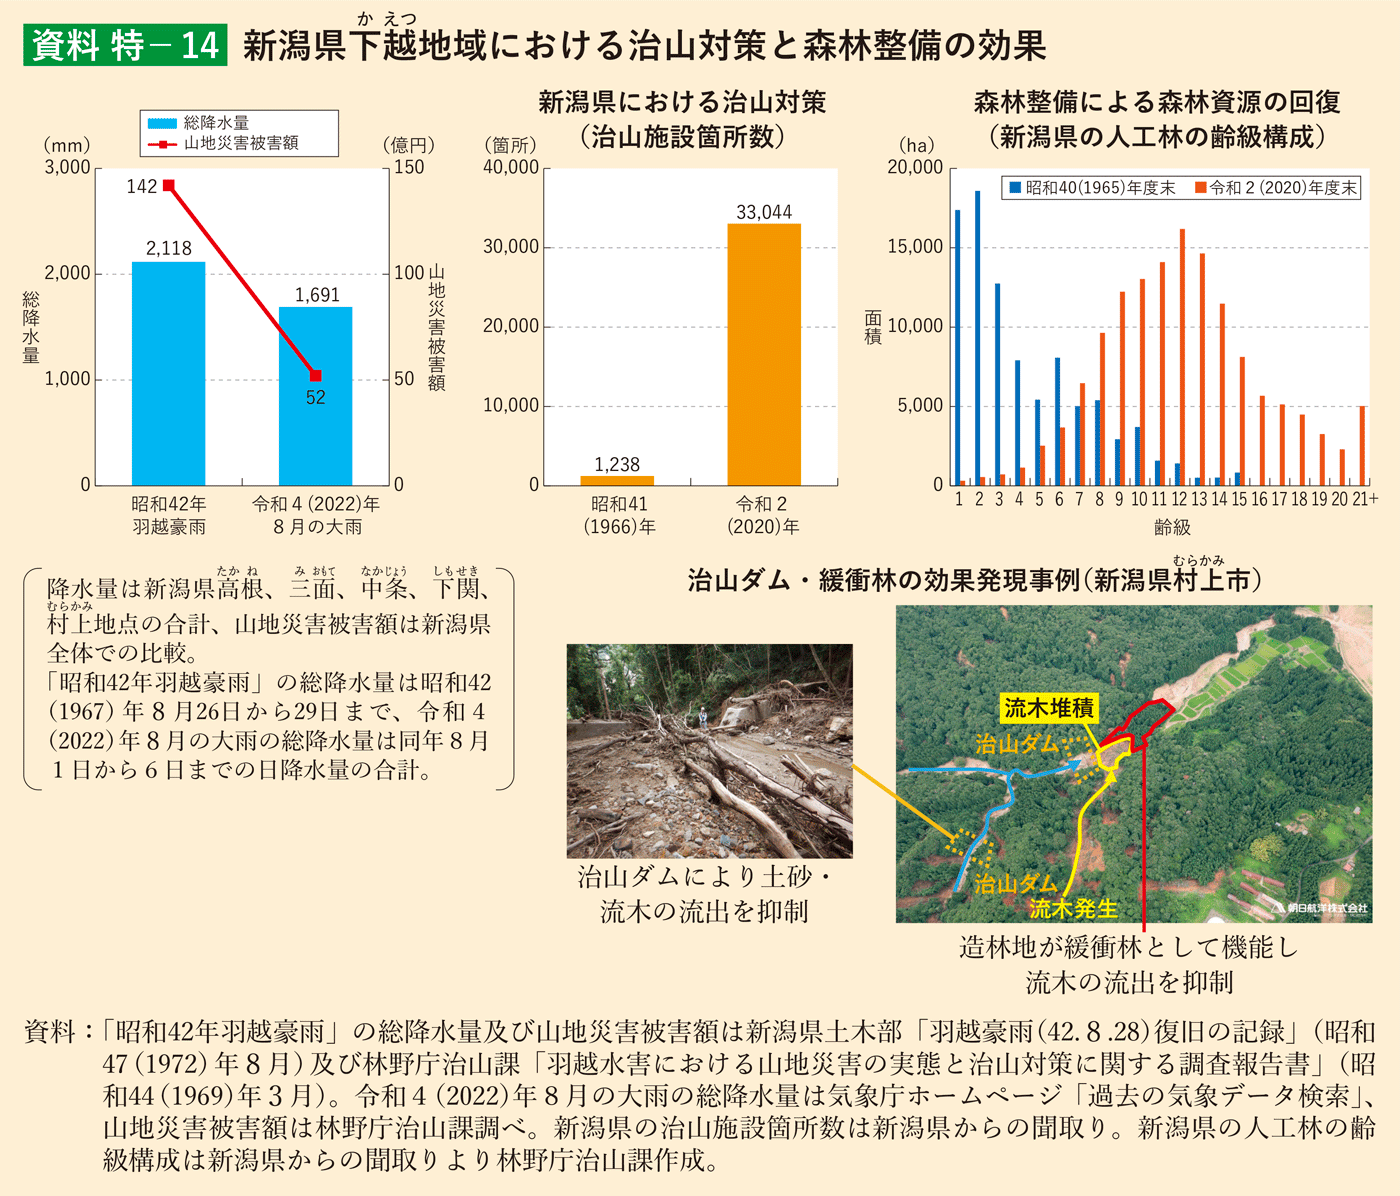 資料 特-14 新潟県下越地域における治山対策と森林整備の効果